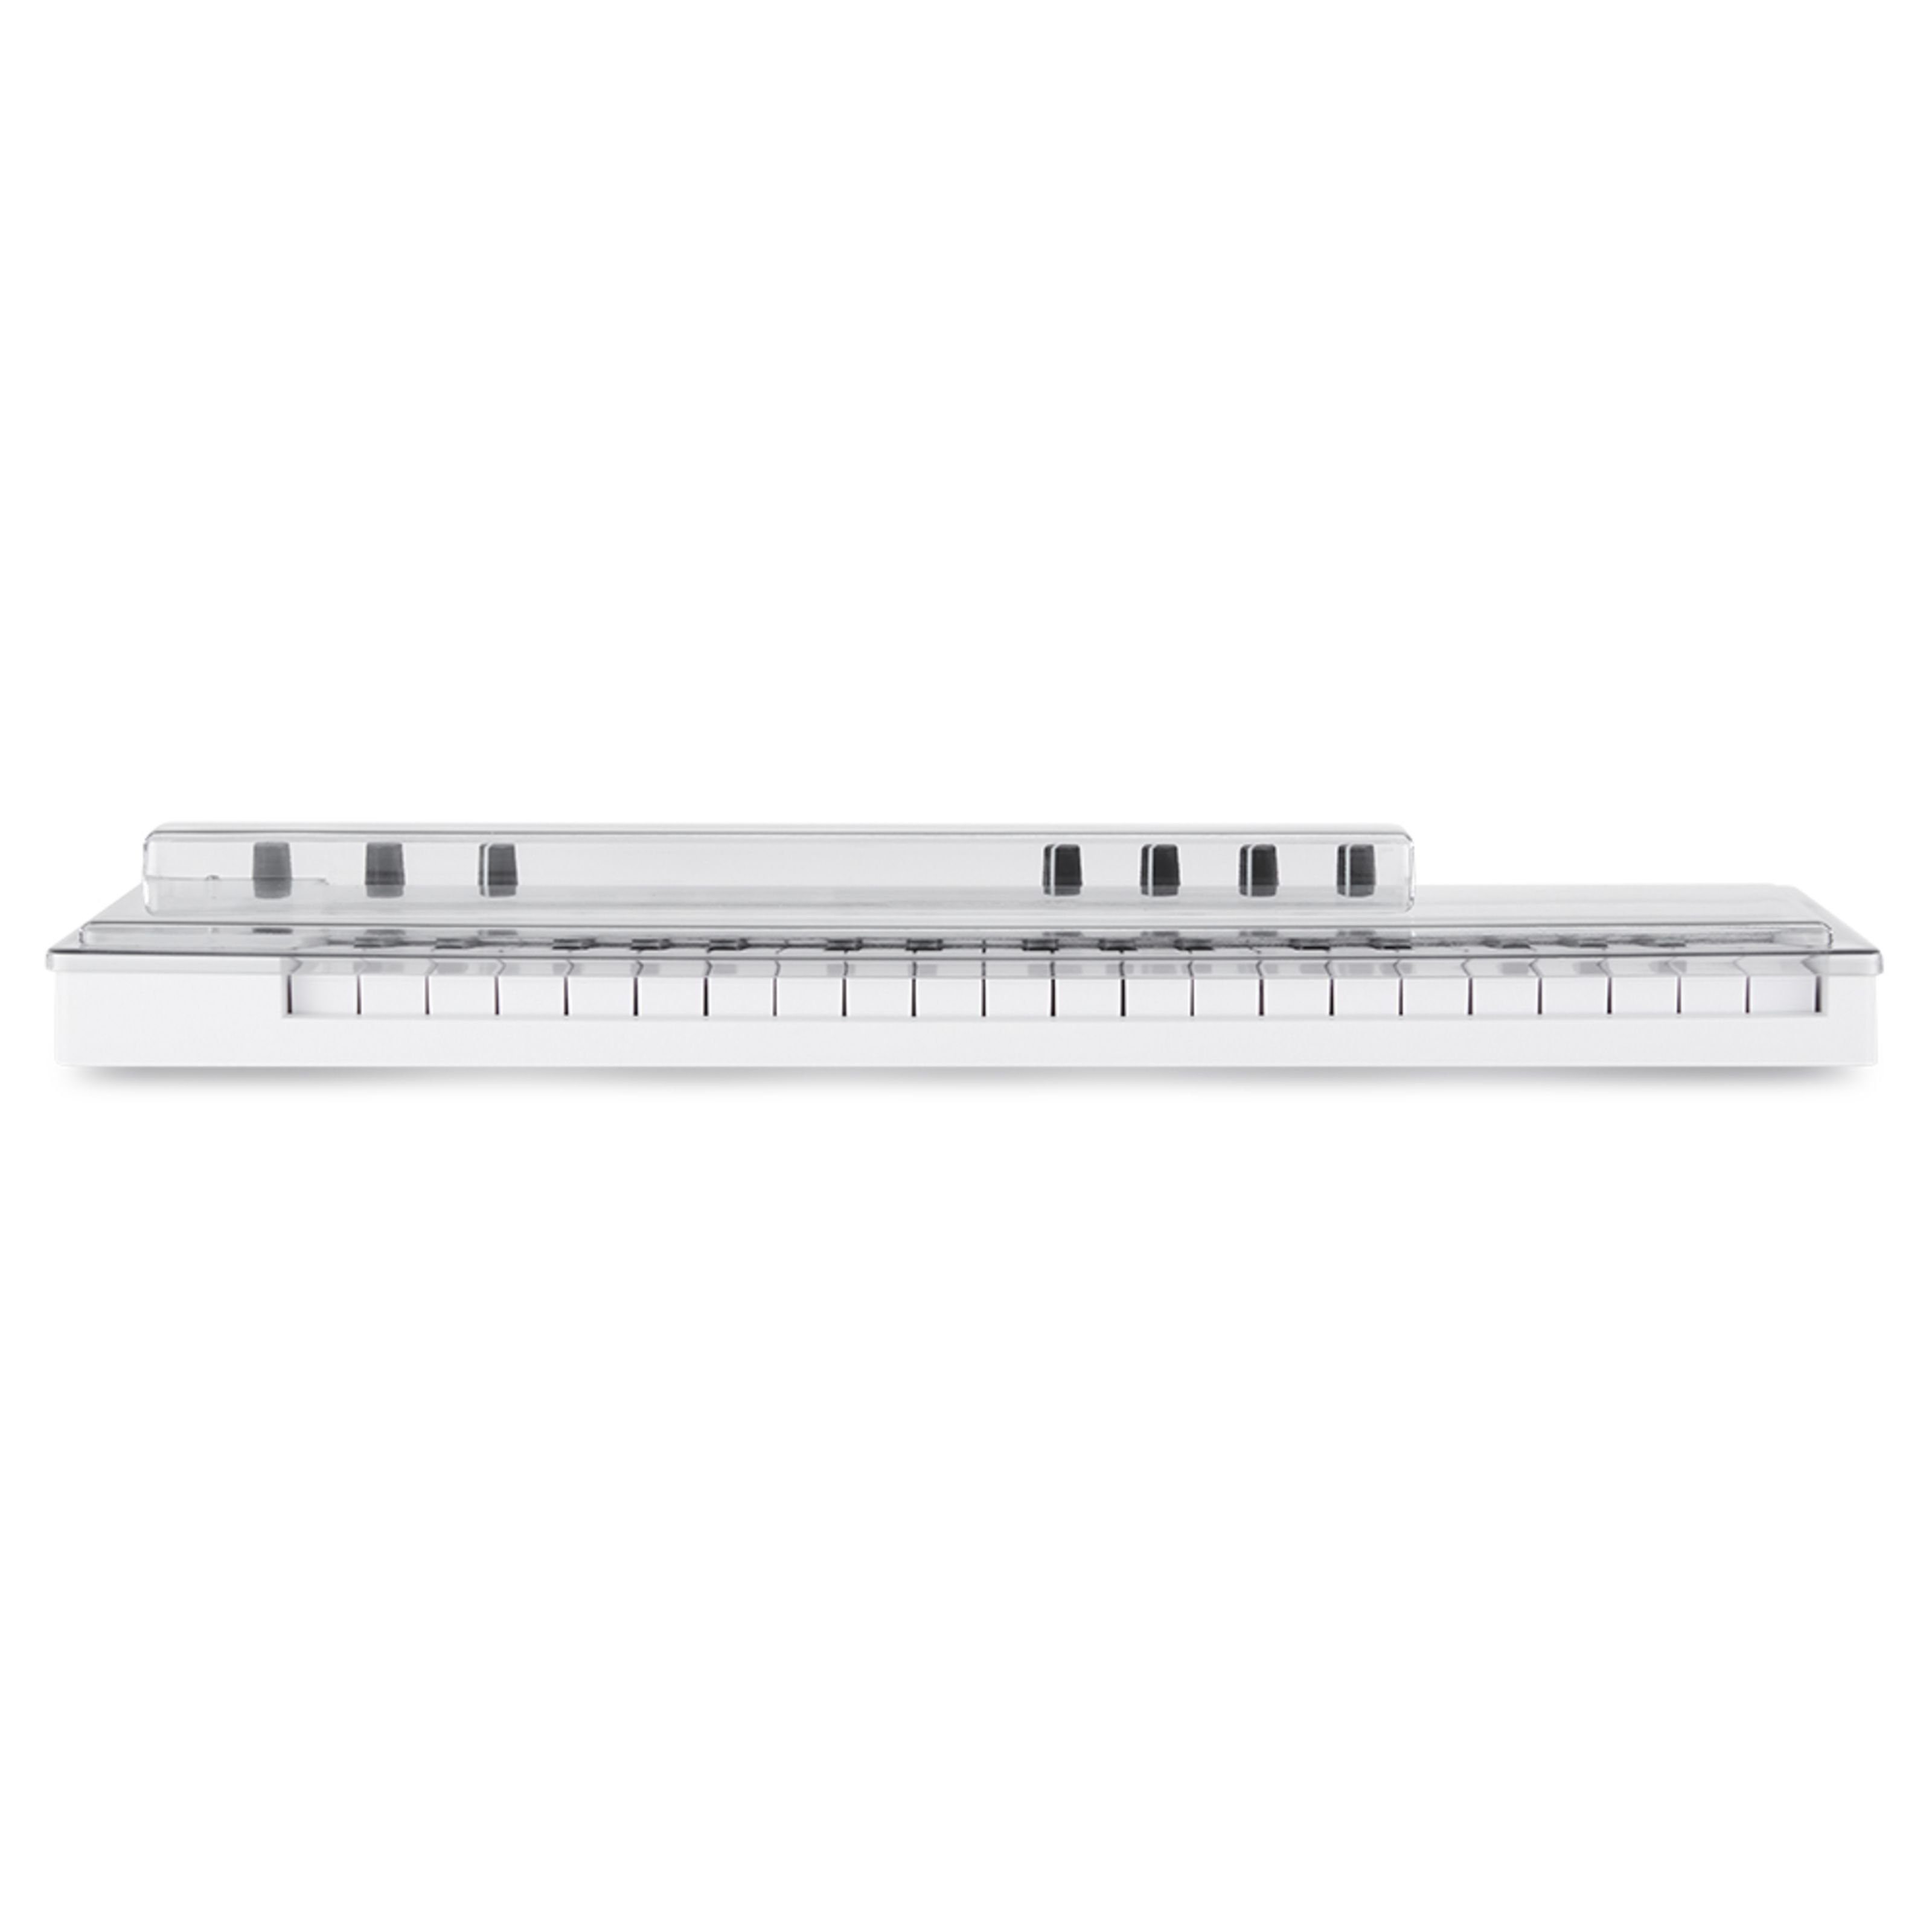 Keystep Arturia 37 Keyboards Abdeckung Spielzeug-Musikinstrument, für Cover Decksaver -